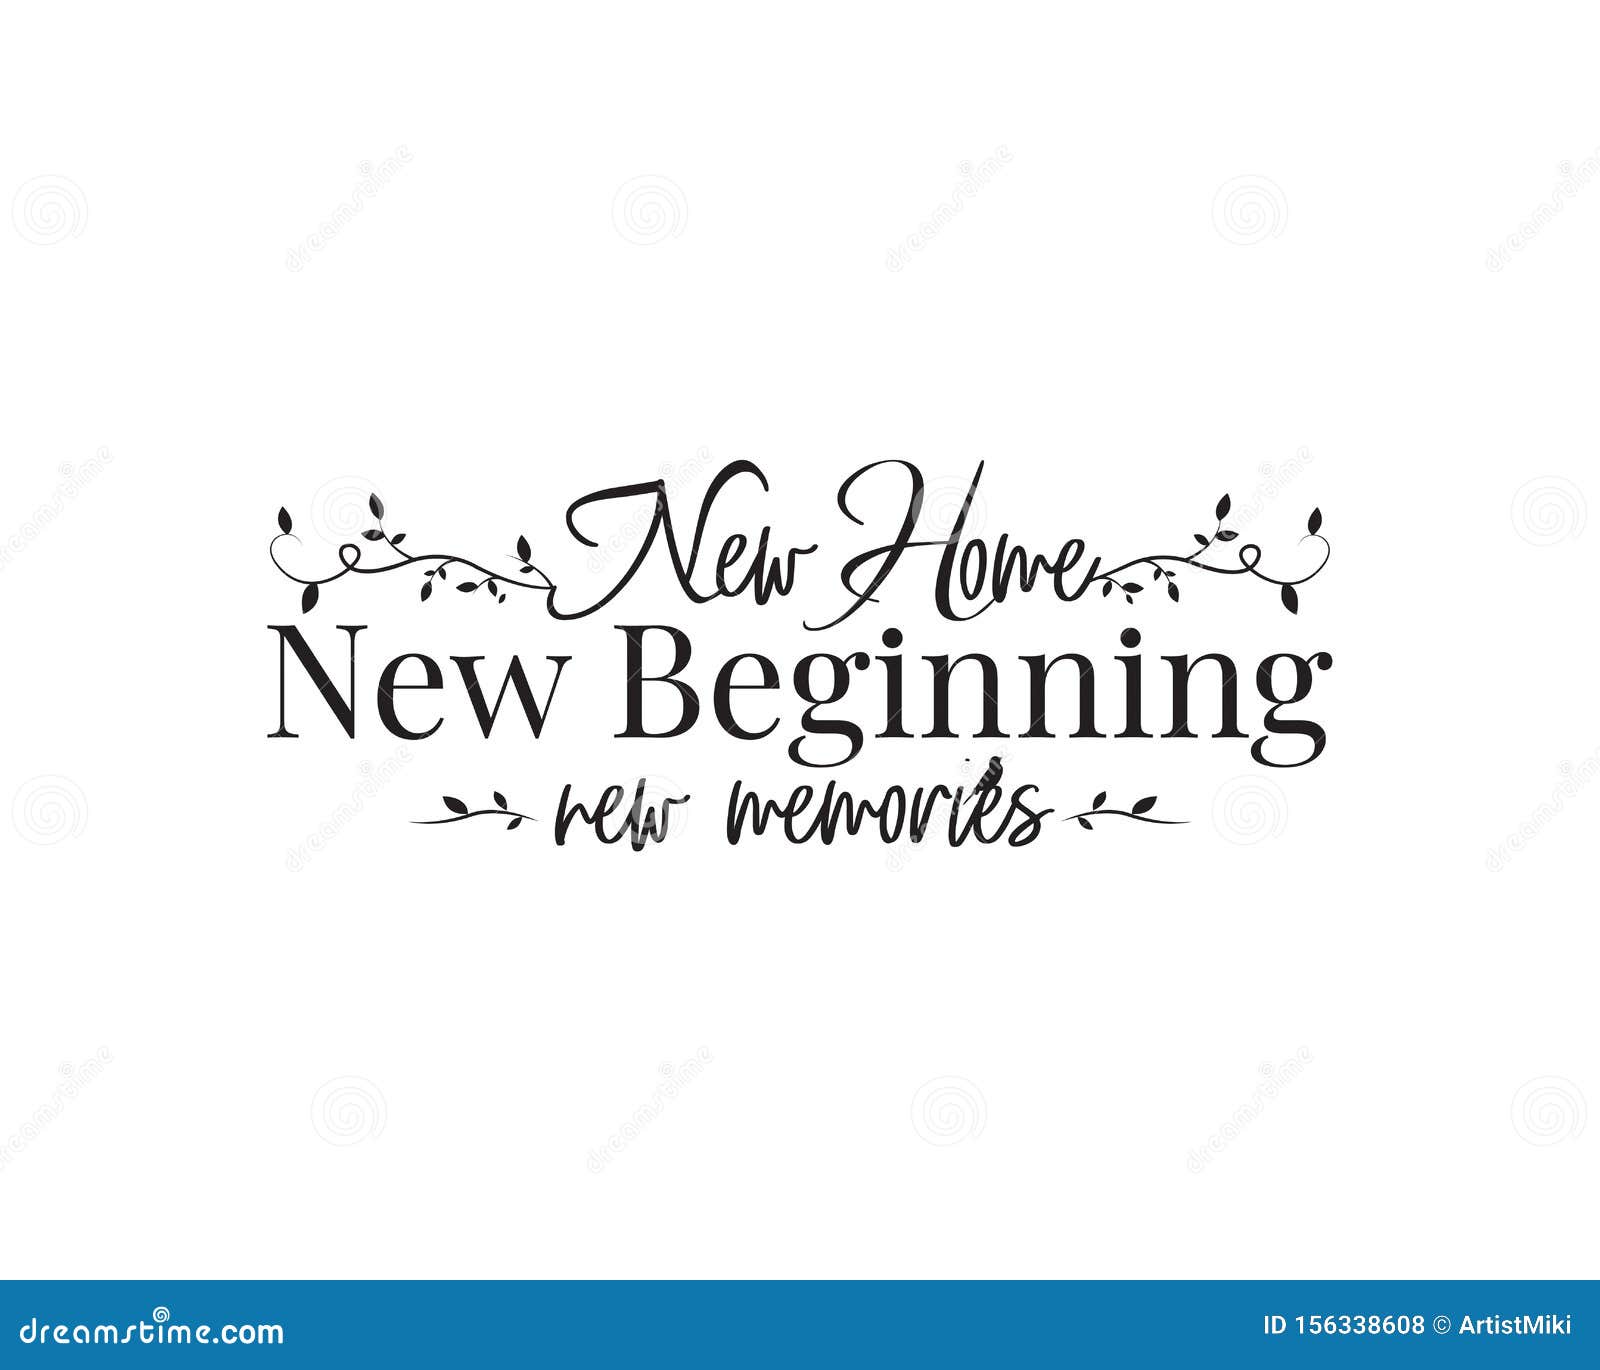 Download New Home, New Beginning, New Memories Vector, Wording ...